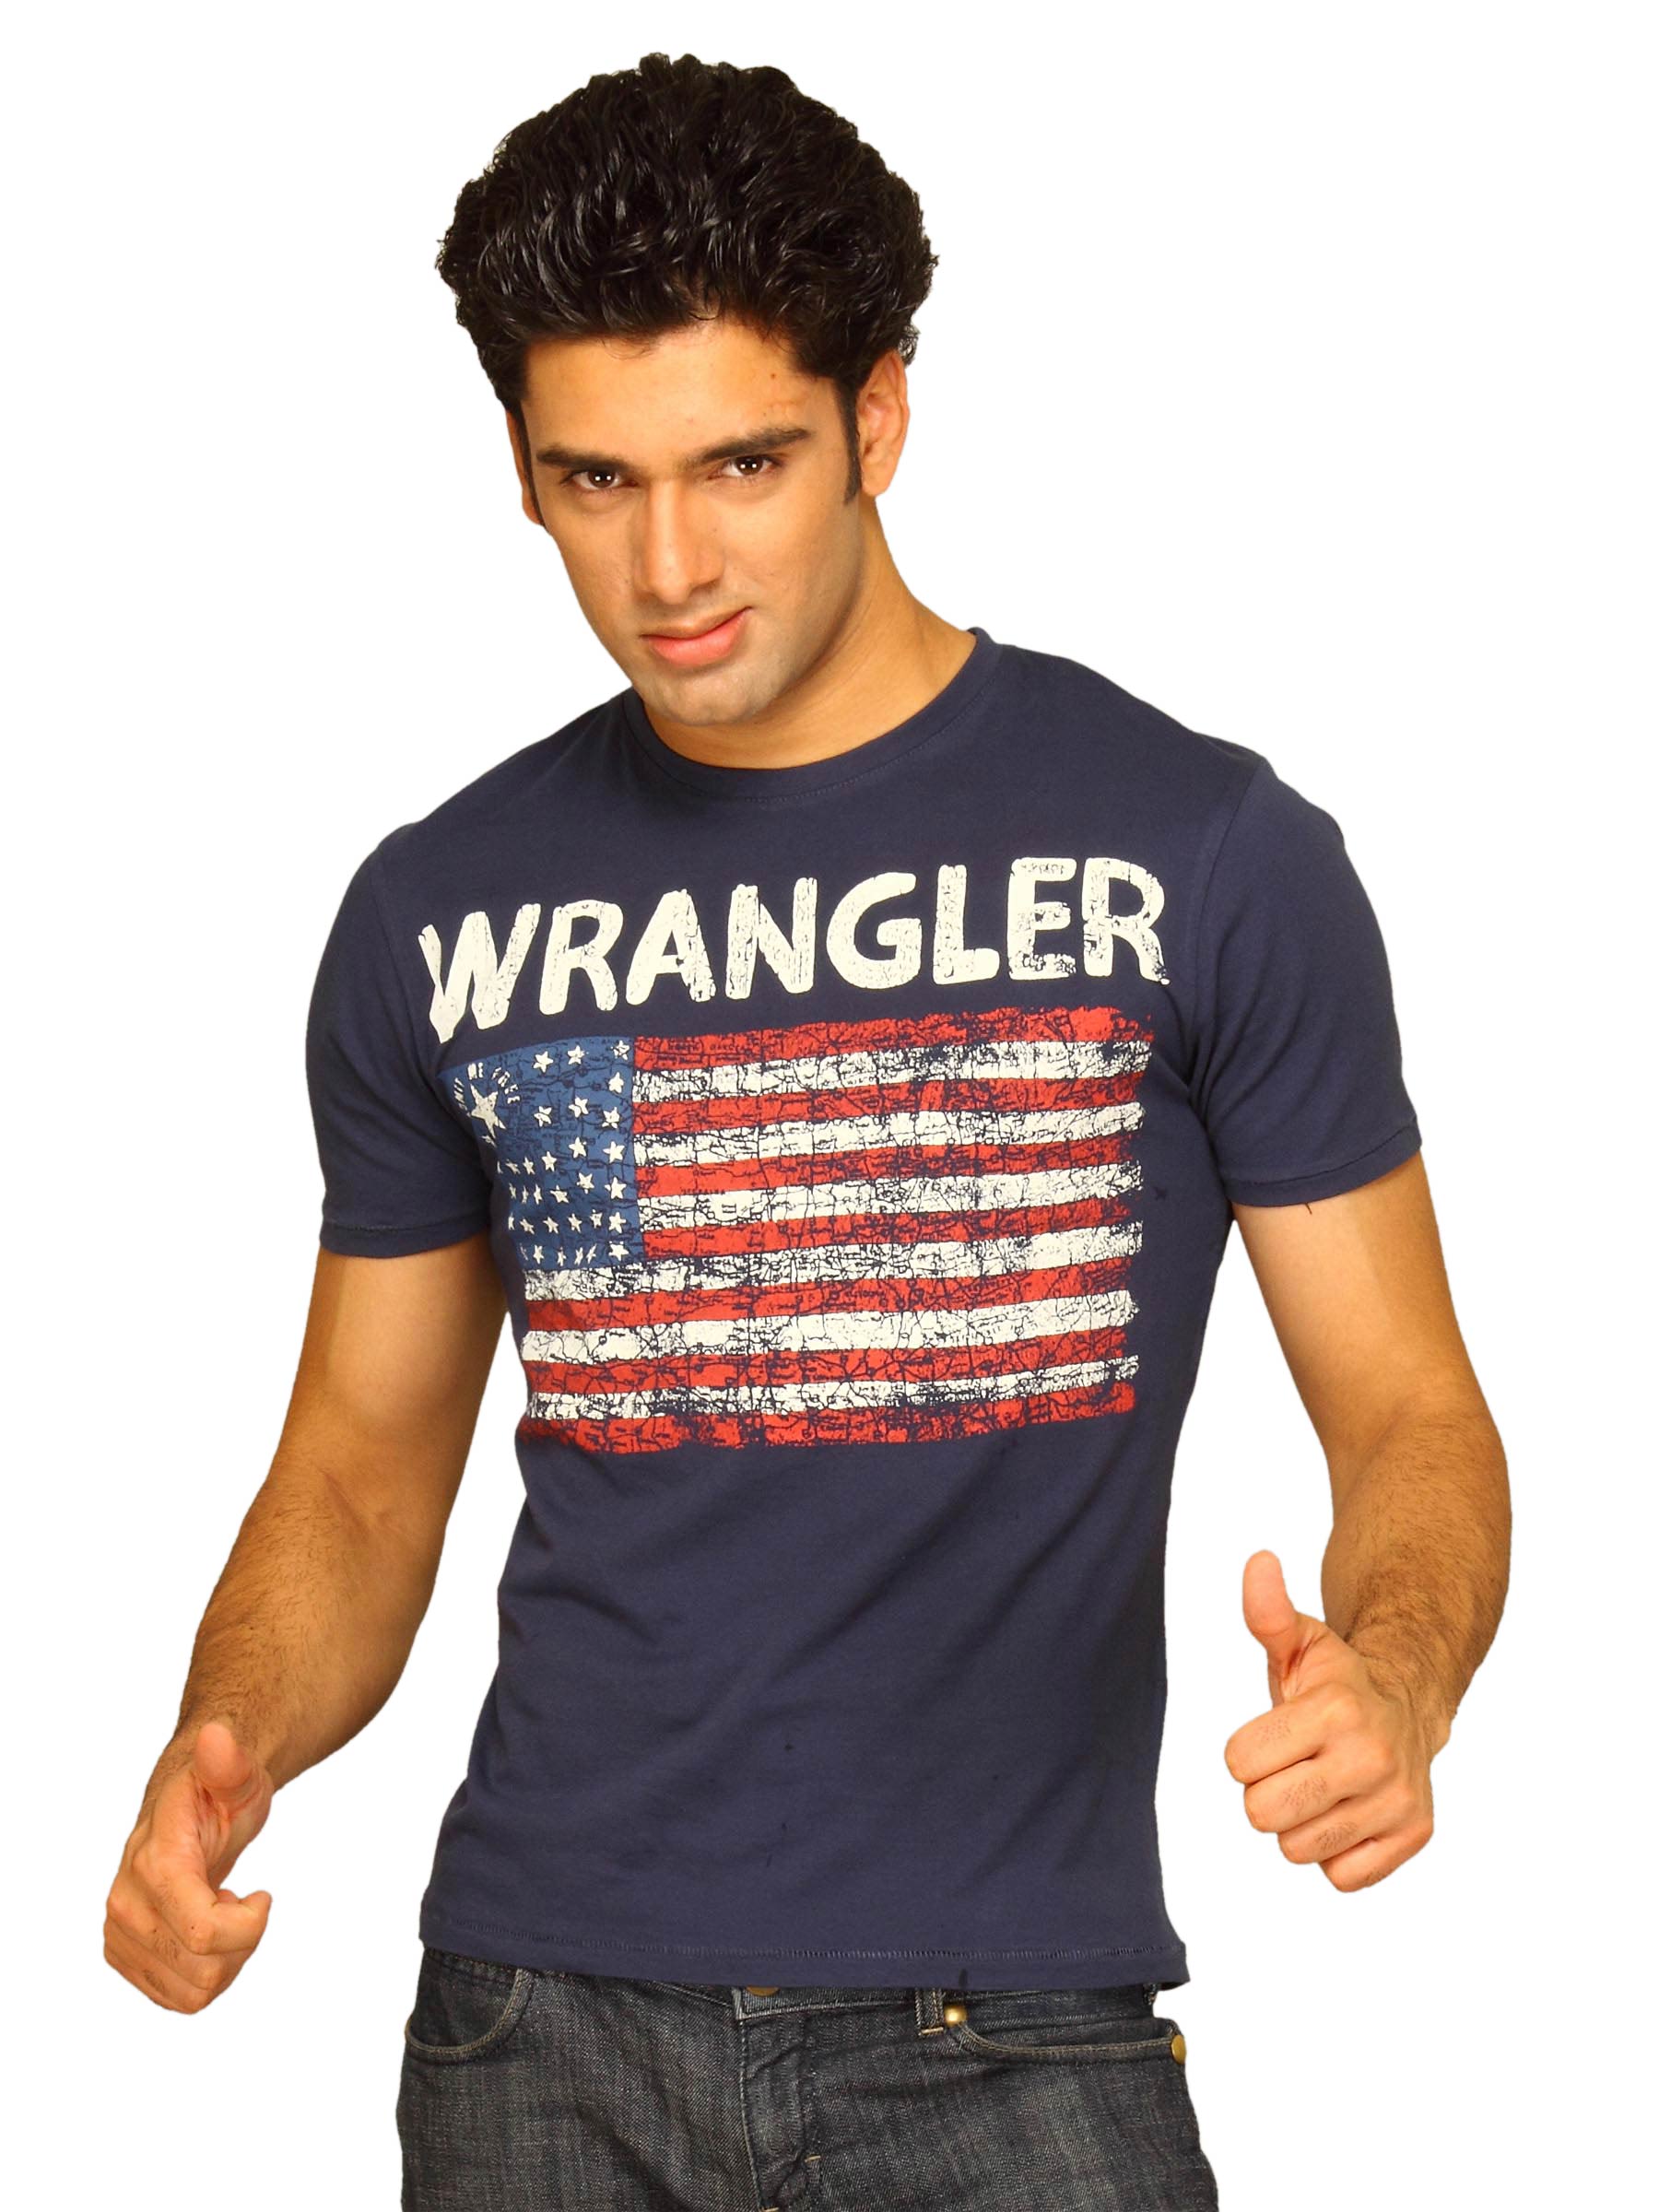 Wrangler Men's Wrangler Flag Navy T-shirt